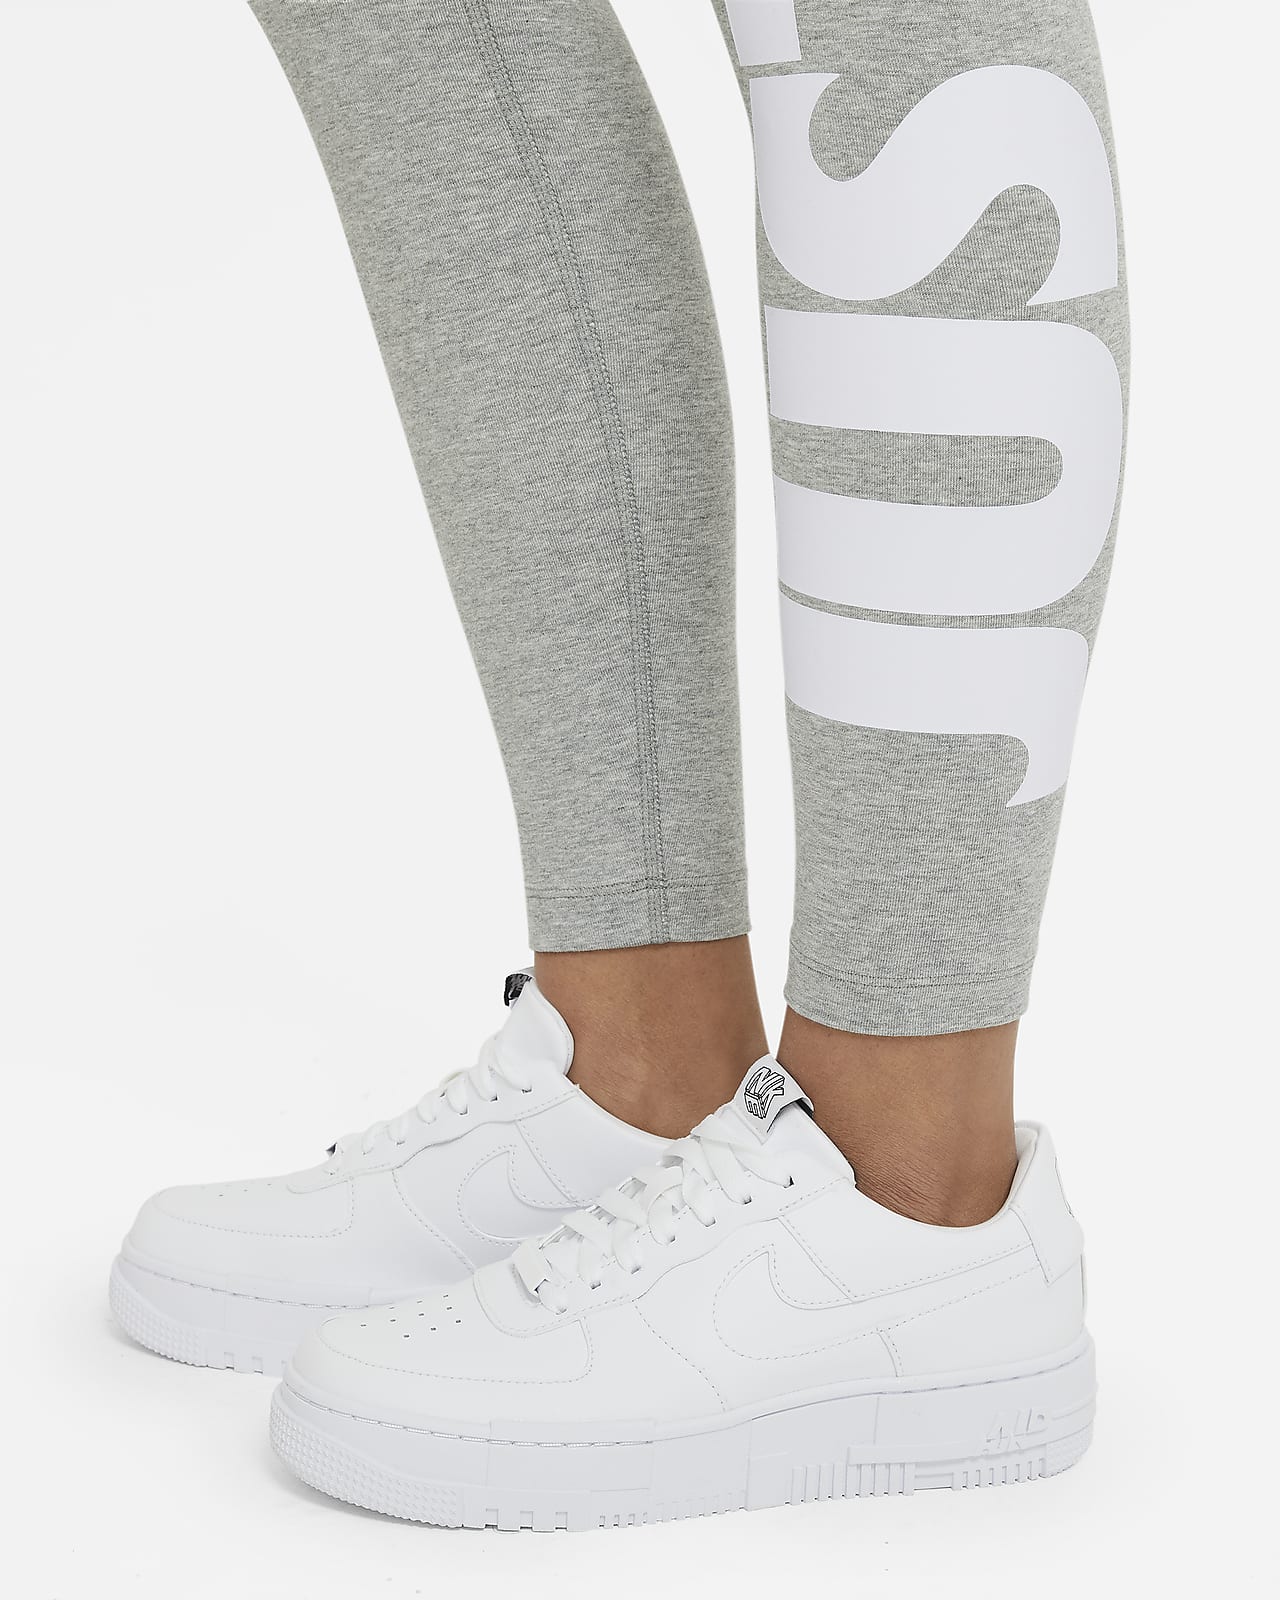 Legginsy damskie Nike Sportswear Essential CZ8528-063 Rozmiar: S (163cm) -  Ceny i opinie 